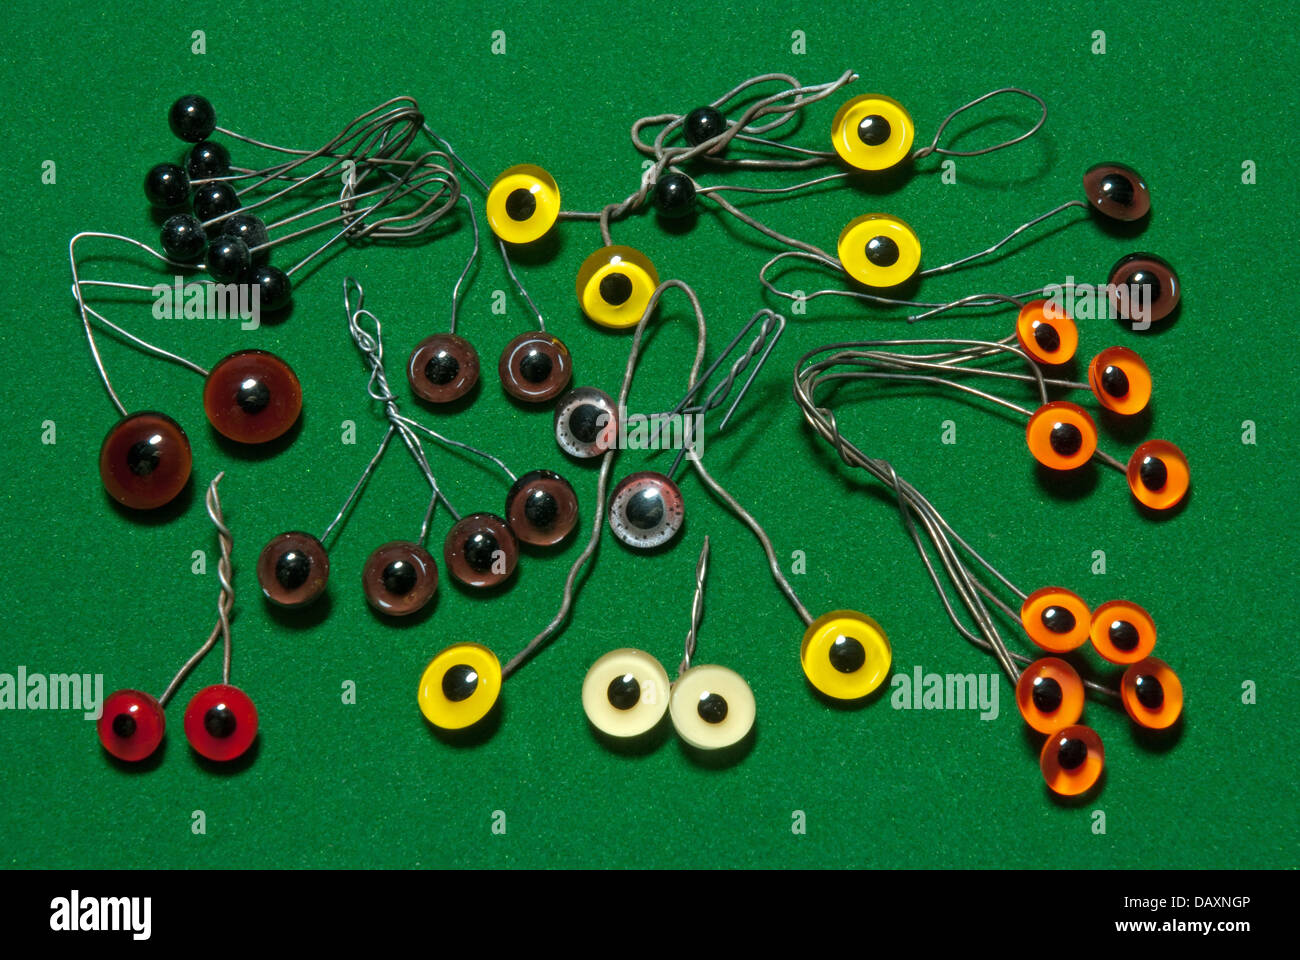 Une sélection de yeux artificiels utilisés pour la taxidermie Banque D'Images